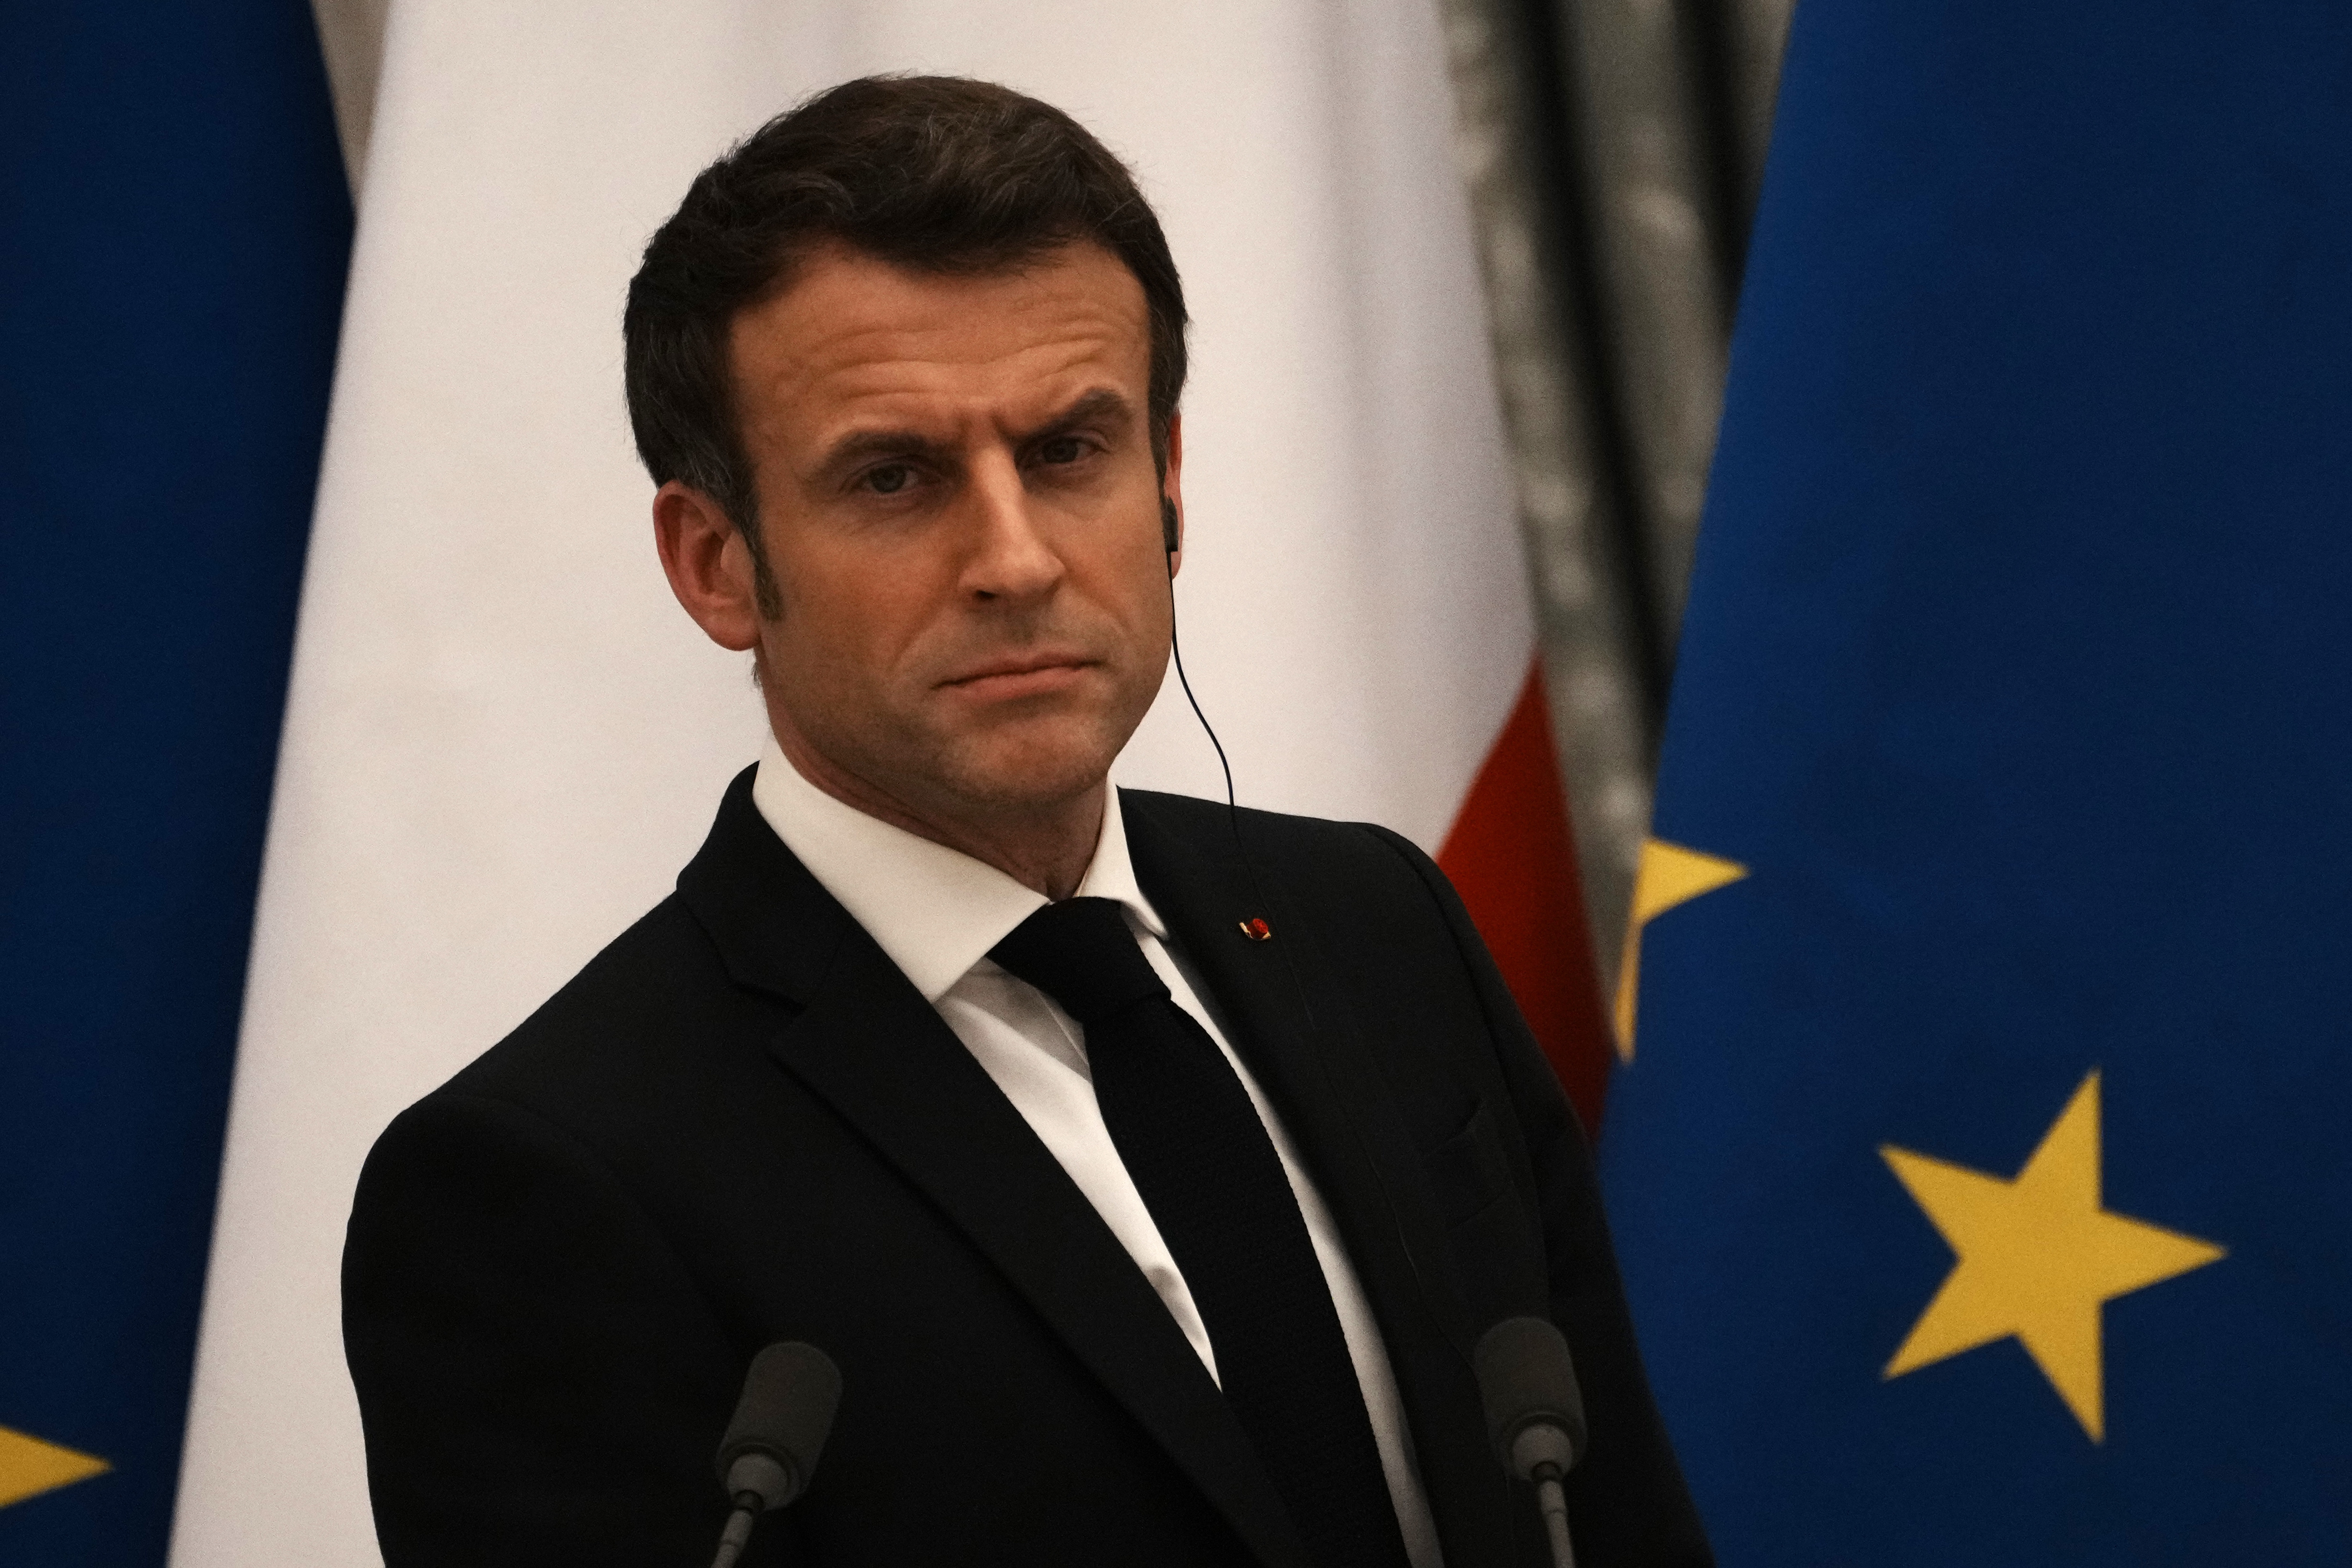 Macron sa rozhodol pri presadení dôchodkovej reformy obísť parlament. Očakáva sa návrh na vyslovenie nedôvery vláde